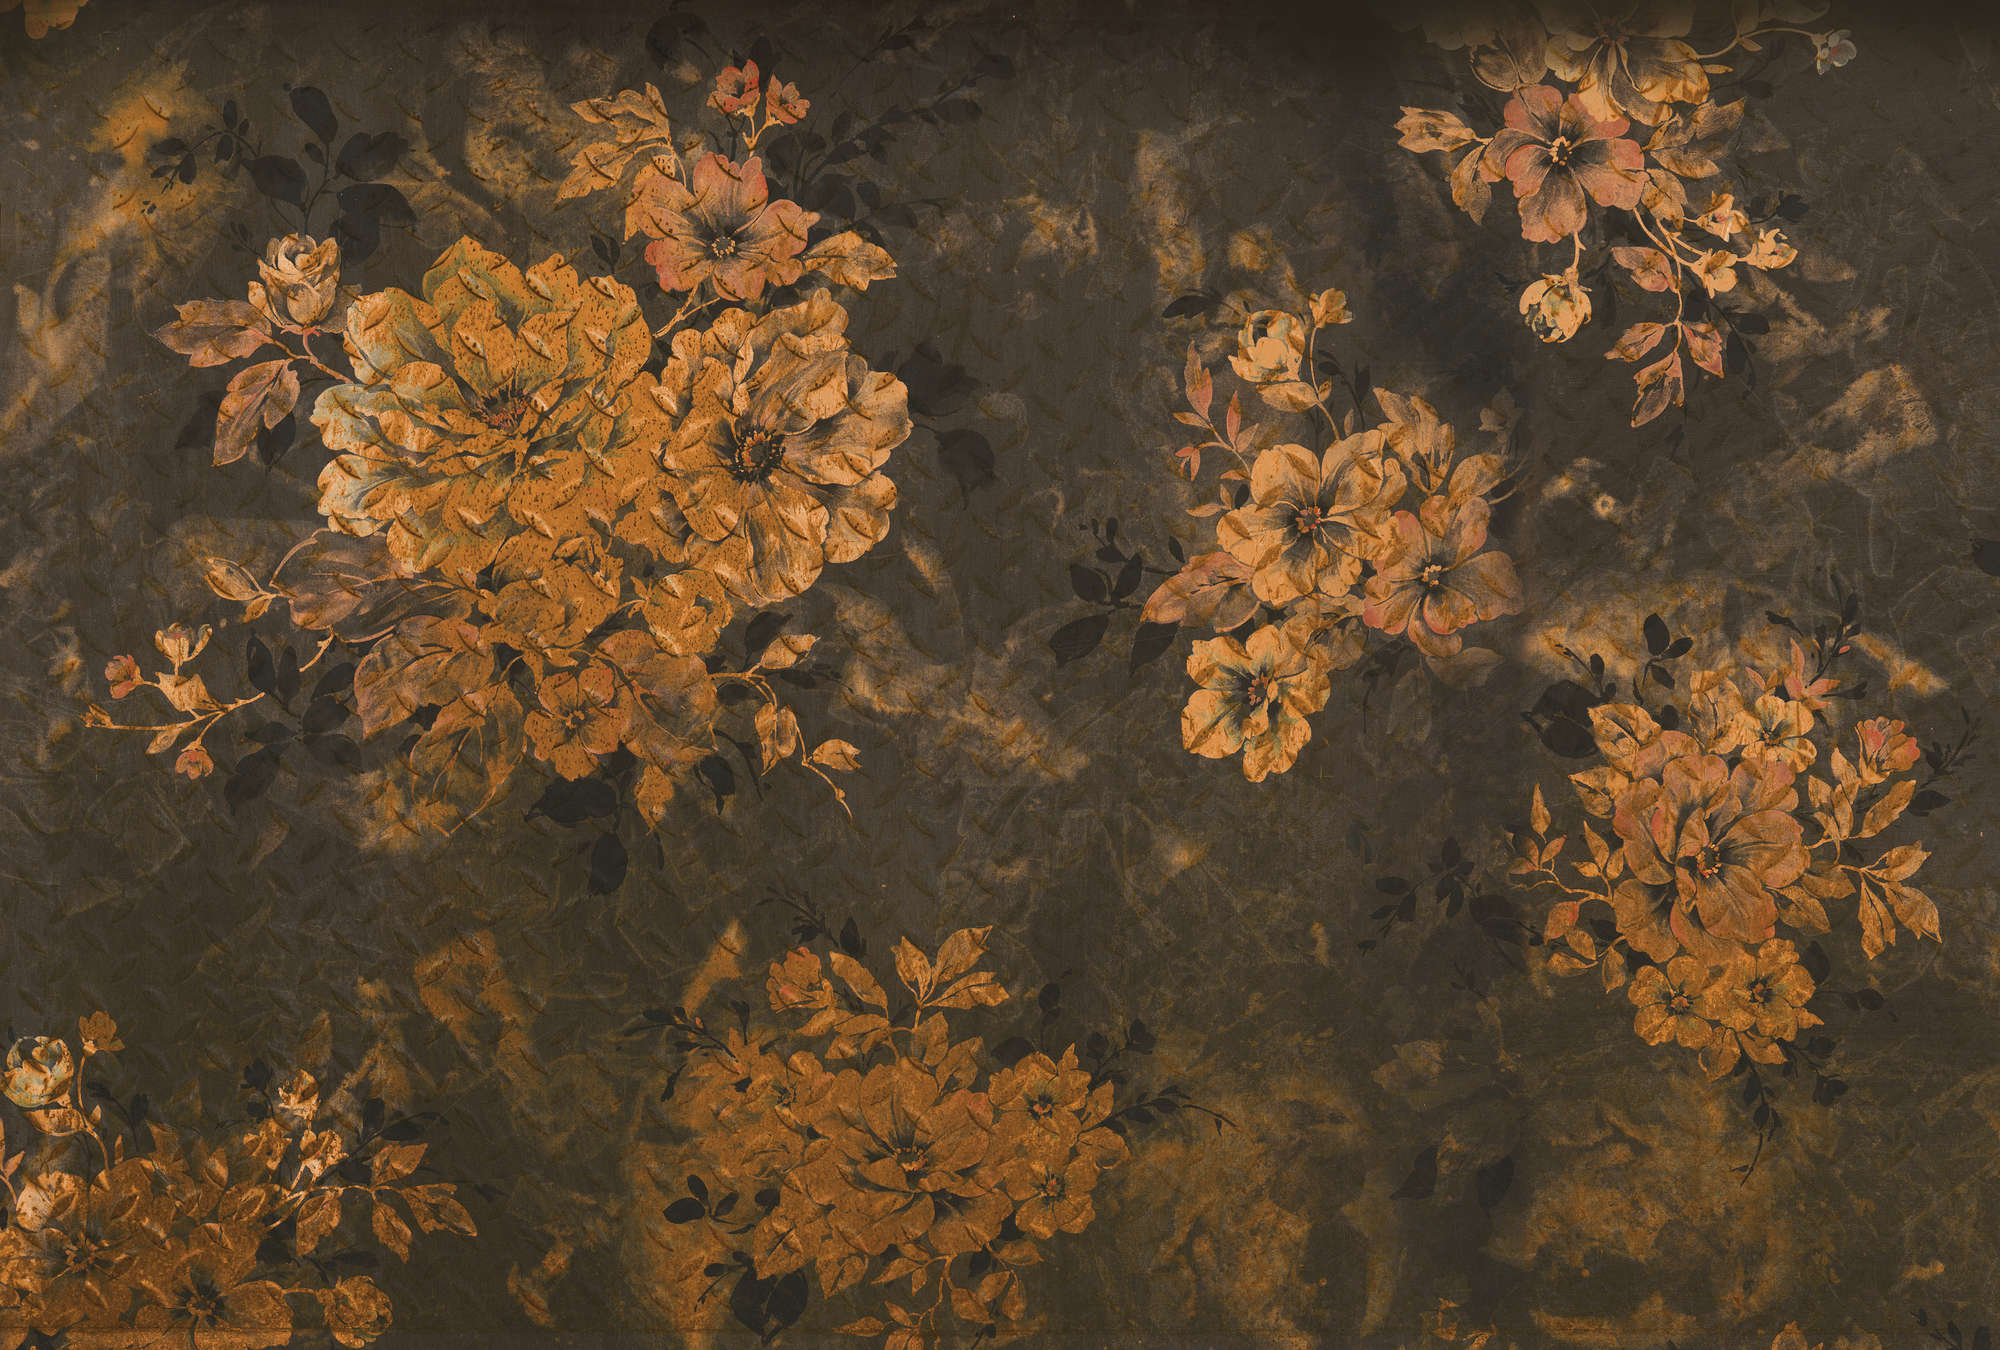             Papier peint panoramique foncé design fleuri format XXL - orange, gris, noir
        